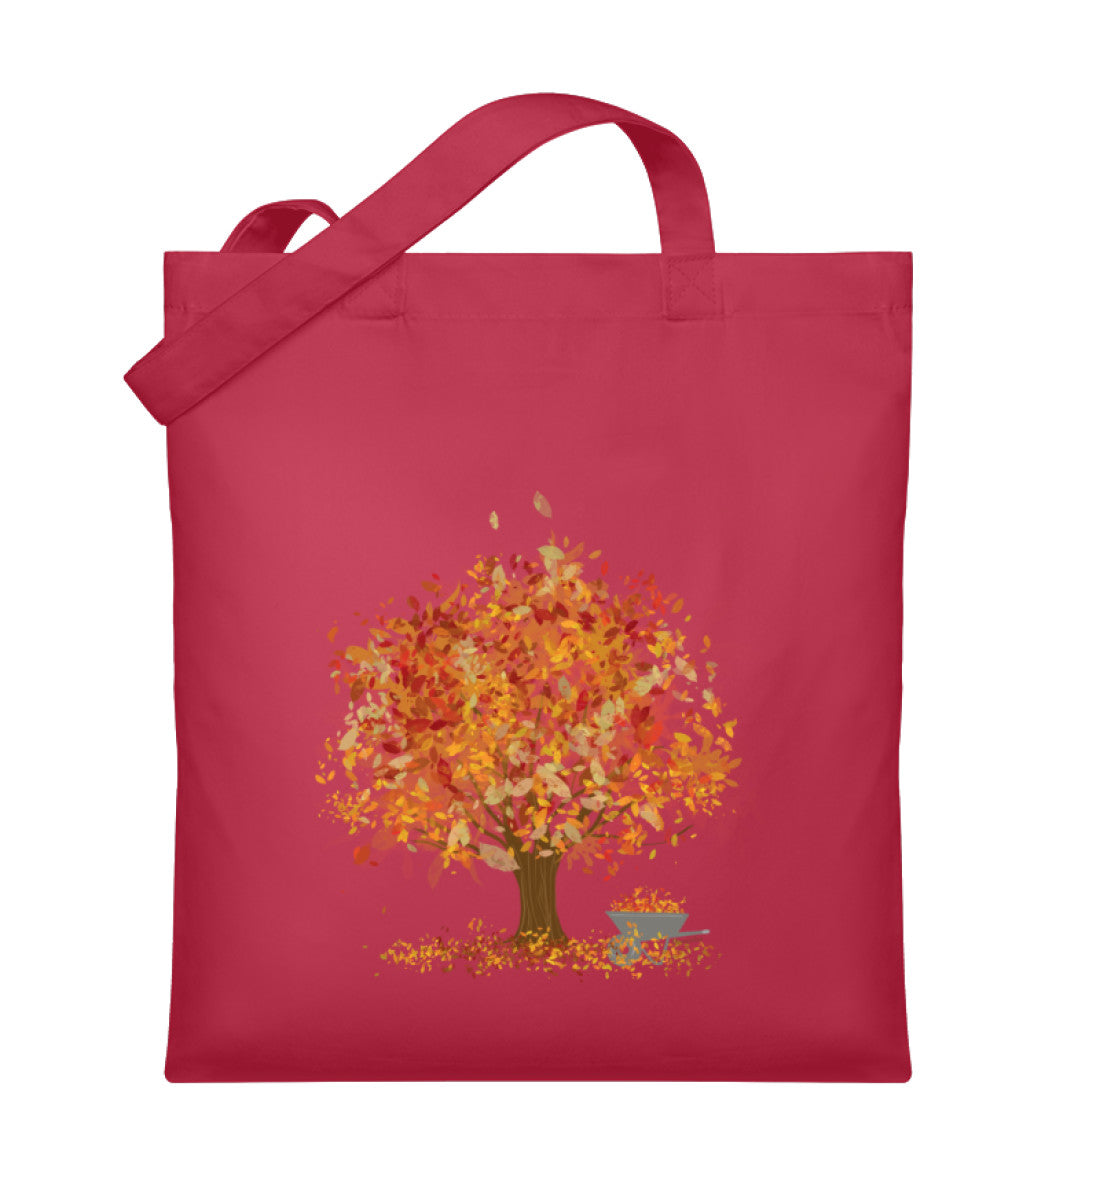 Herbstlicher Baum - Organic Jutebeutel